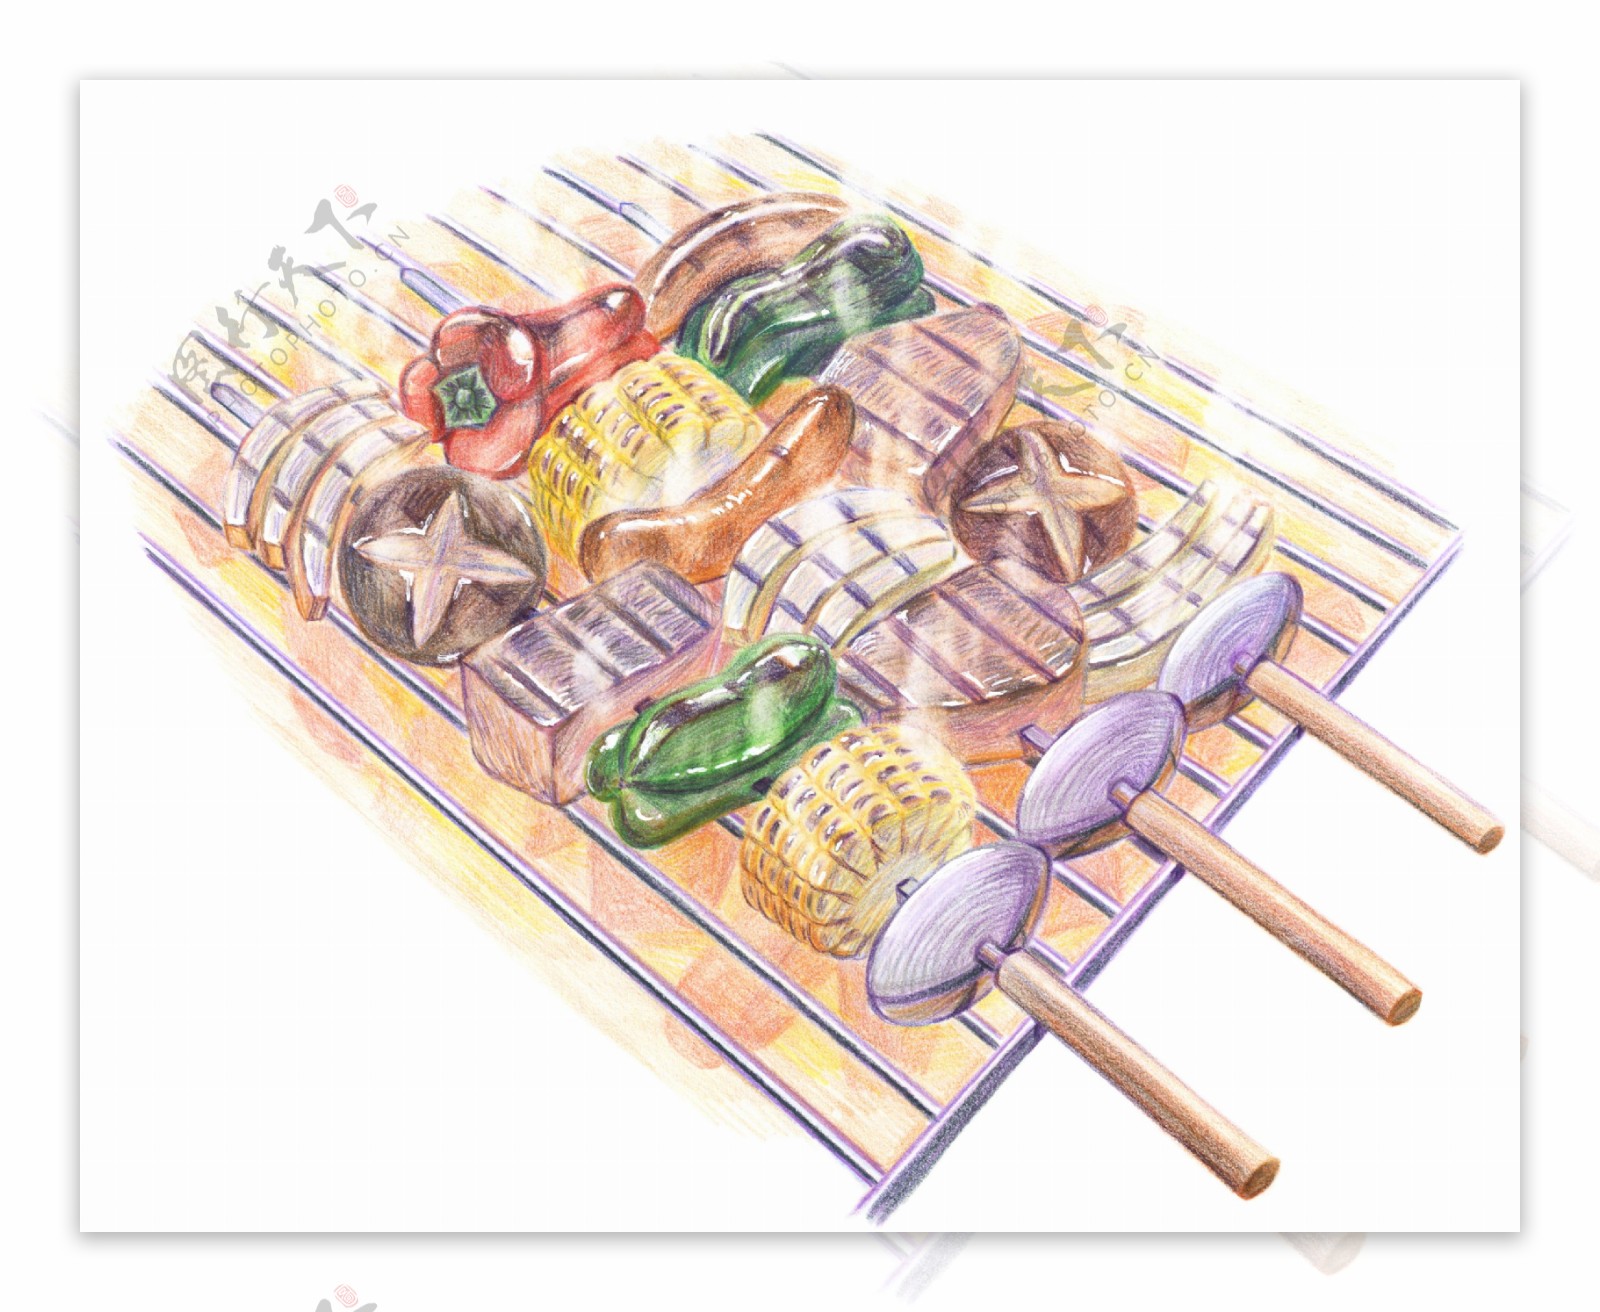 彩铅绘画美食菜谱图片